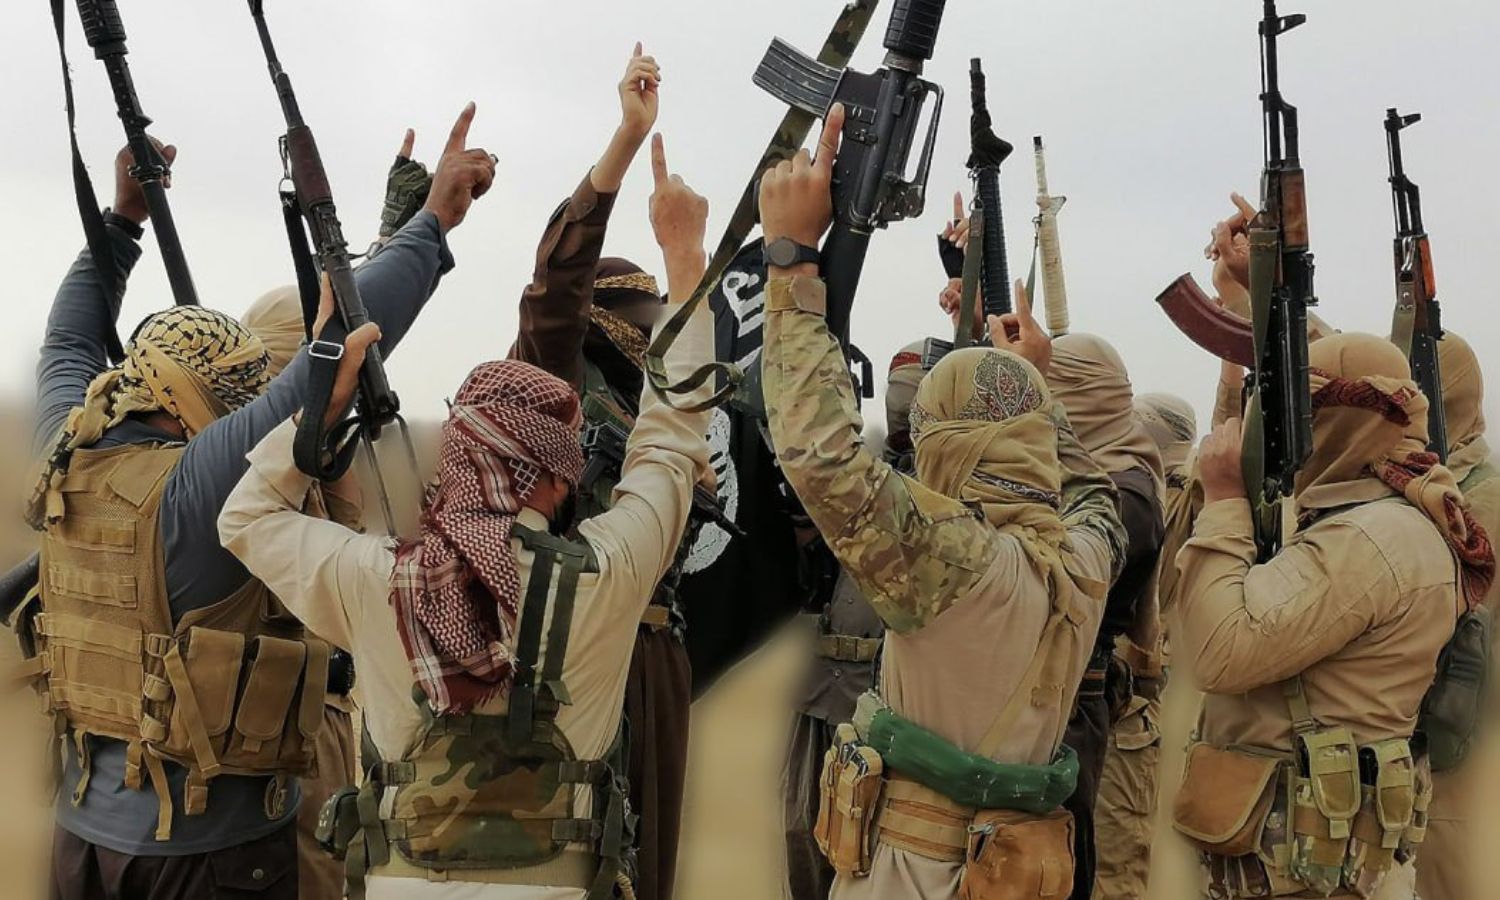 مقاتلو تنظيم "الدولة الإسلامية" في العراق يبايعون الزعيم الجديد "أبو الحسين القرشي" (قبل مقتله)- تشرين الثاني 2022 (معرف التنظيم تلجرام)